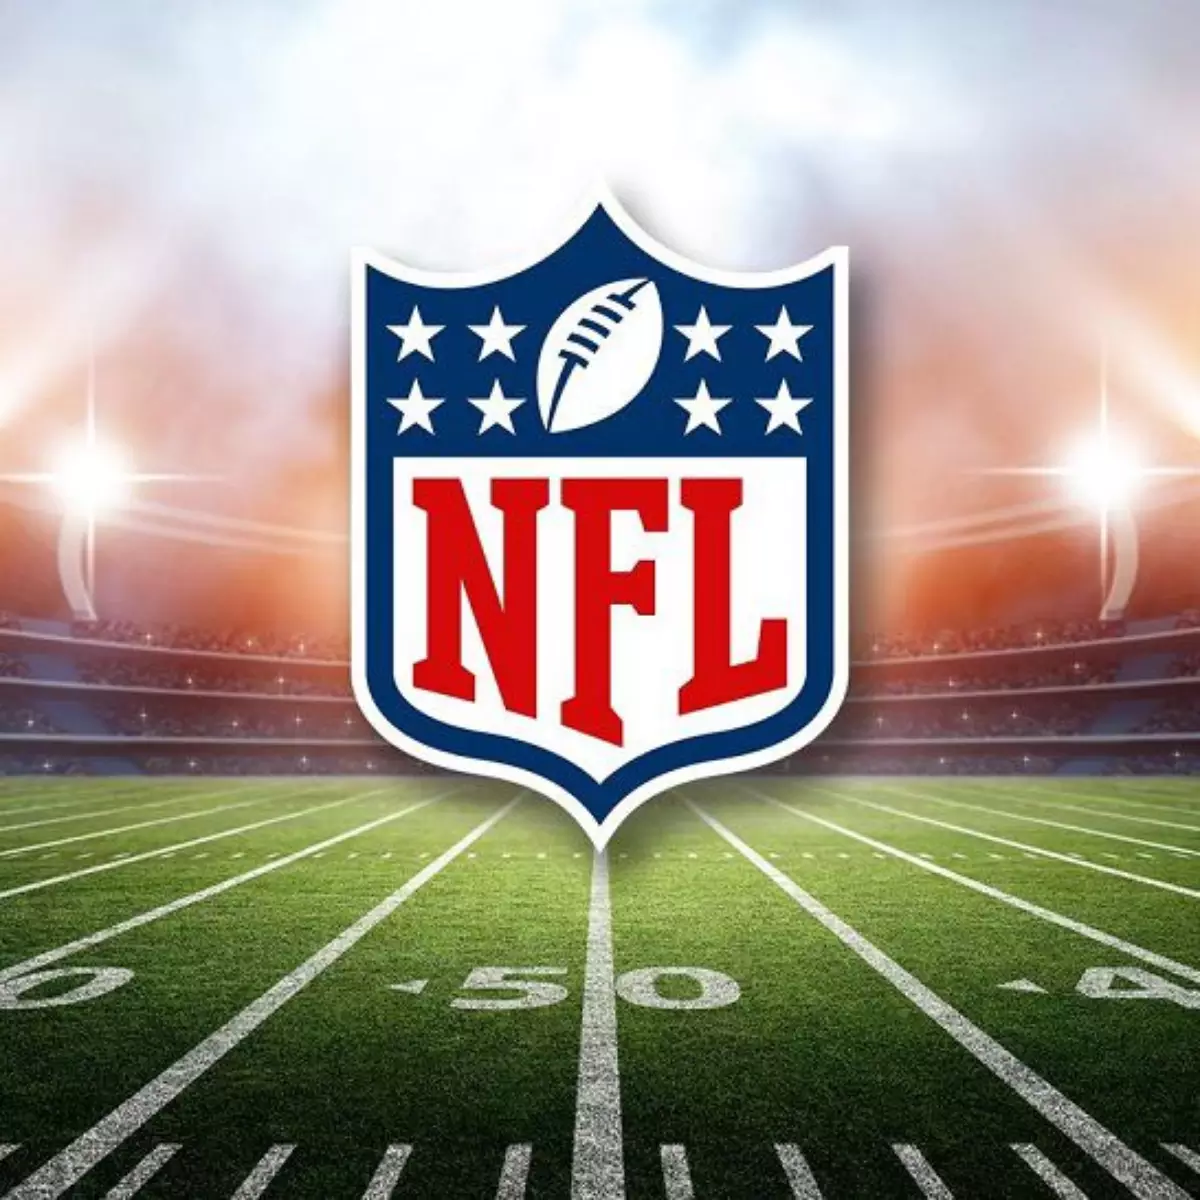 A NFL jogará um jogo da temporada regular no Brasil durante a temporada de  2024 e anuncia que o SB LXI será disputado em Los Angeles